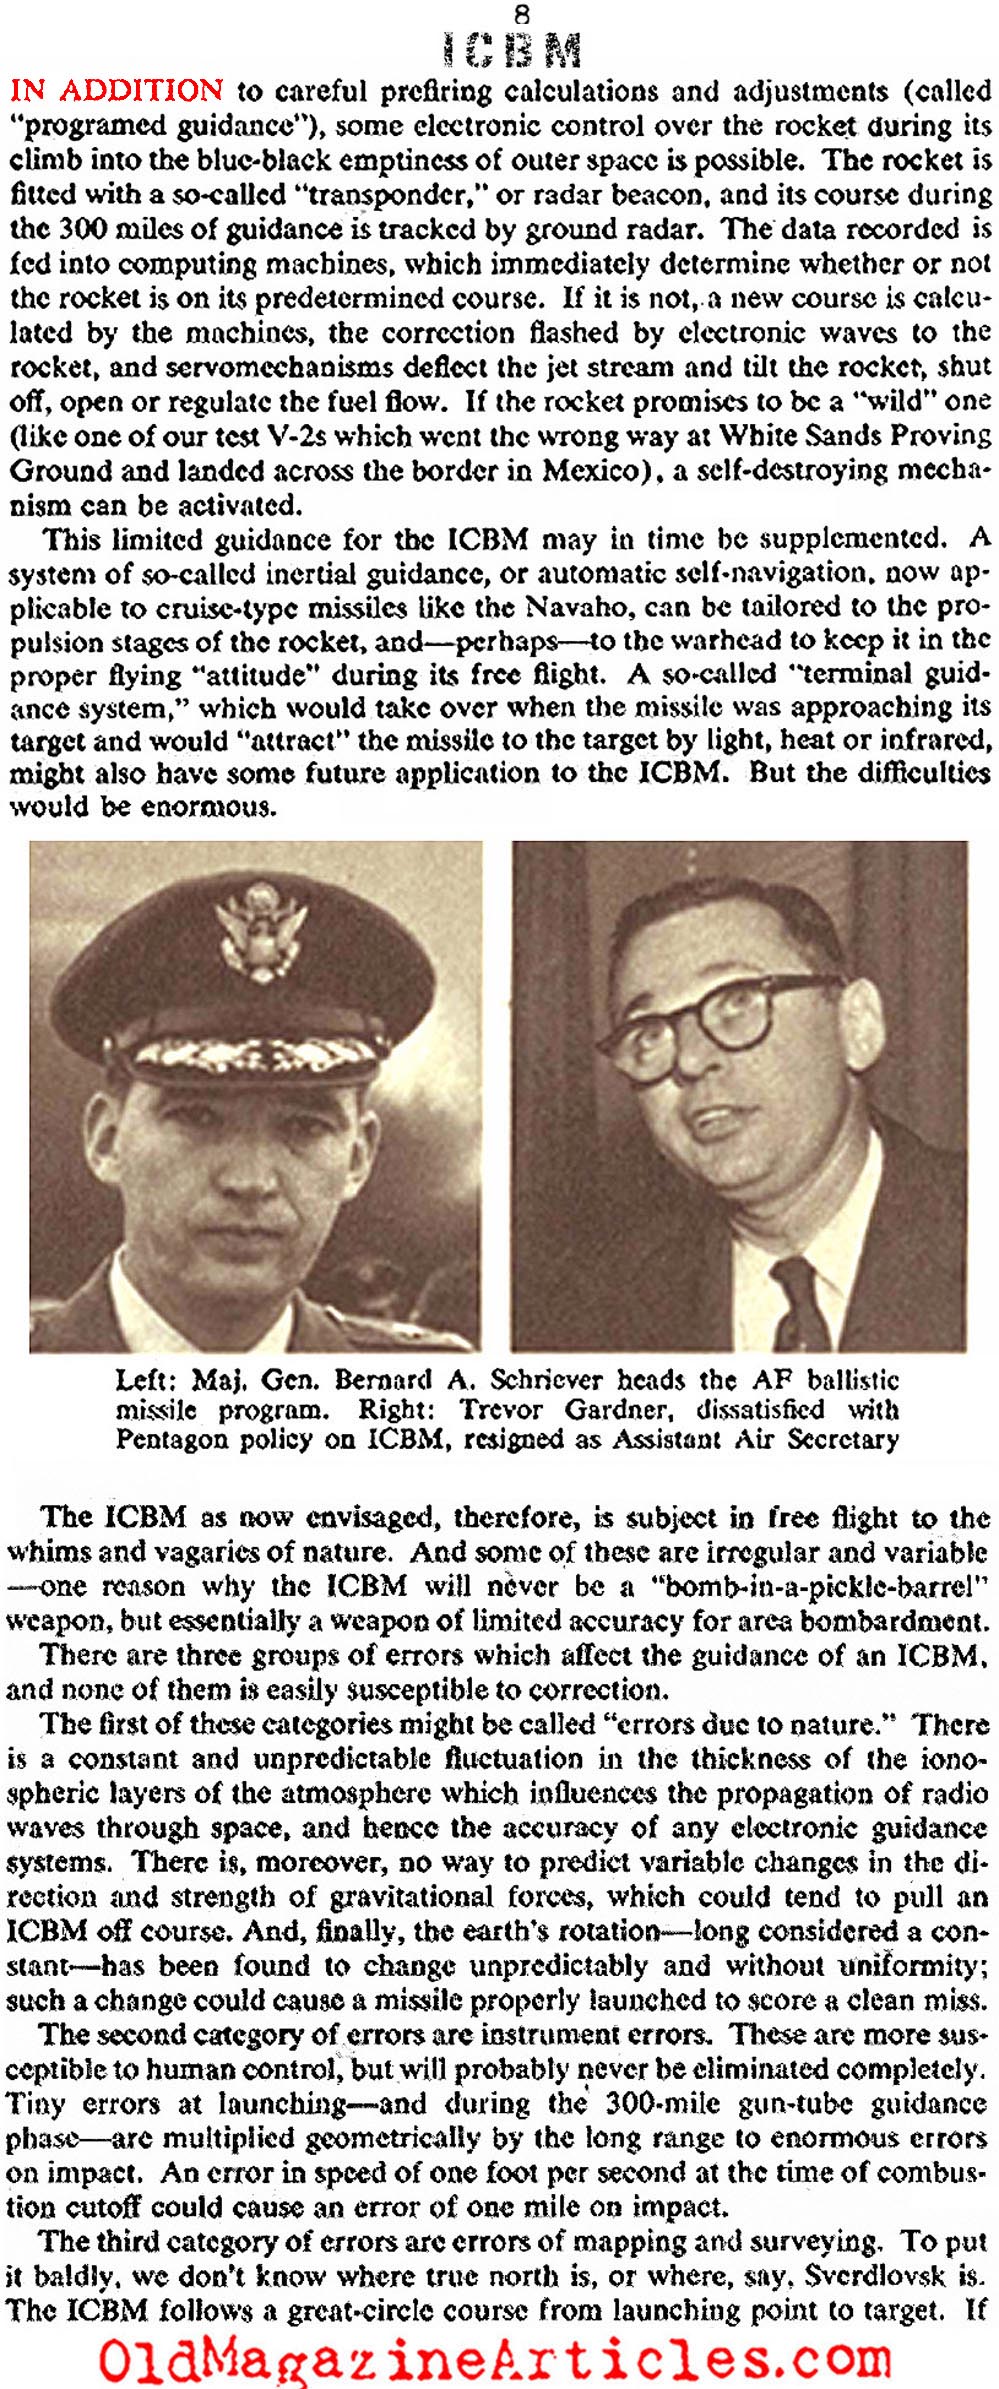 The ICBM (Collier's Magazine, 1956)